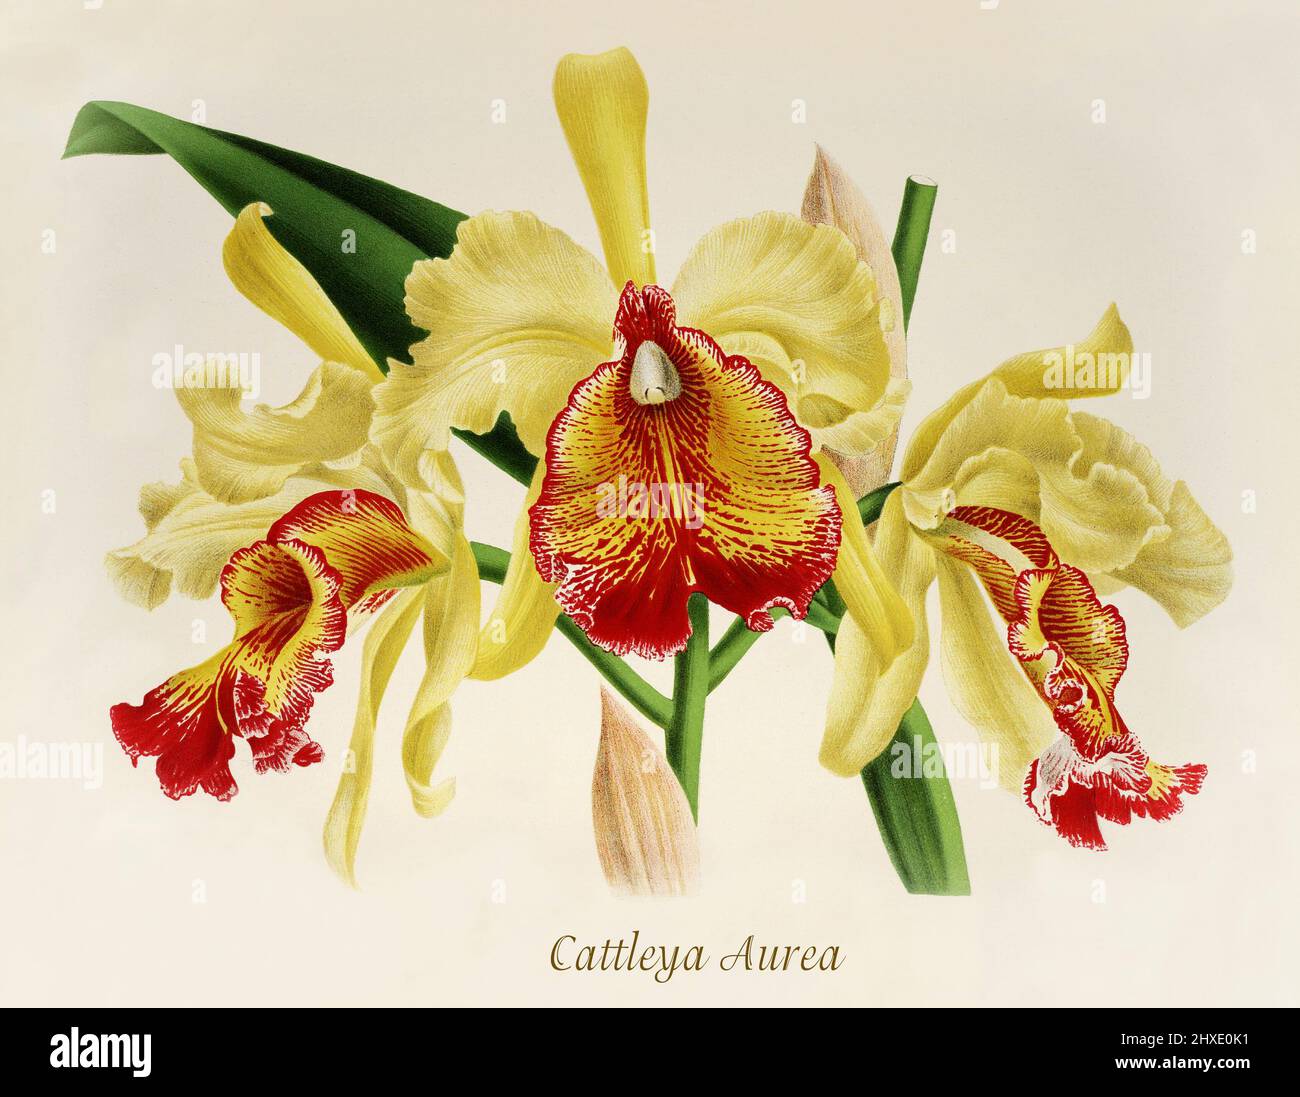 Cattleya aurea es una variedad de orquídeas epifíticas de Cattleya dowiana que pertenece al género Cattleya, una gran orquídea de hábitos epifíticos producida en Columbia. De Iconographie des Orchidees, una revista de ilustraciones botánicas publicada por Jean Jules Linden (1817-1898) fue un botánico, explorador y horticultor belga especializado en orquídeas. Foto de stock